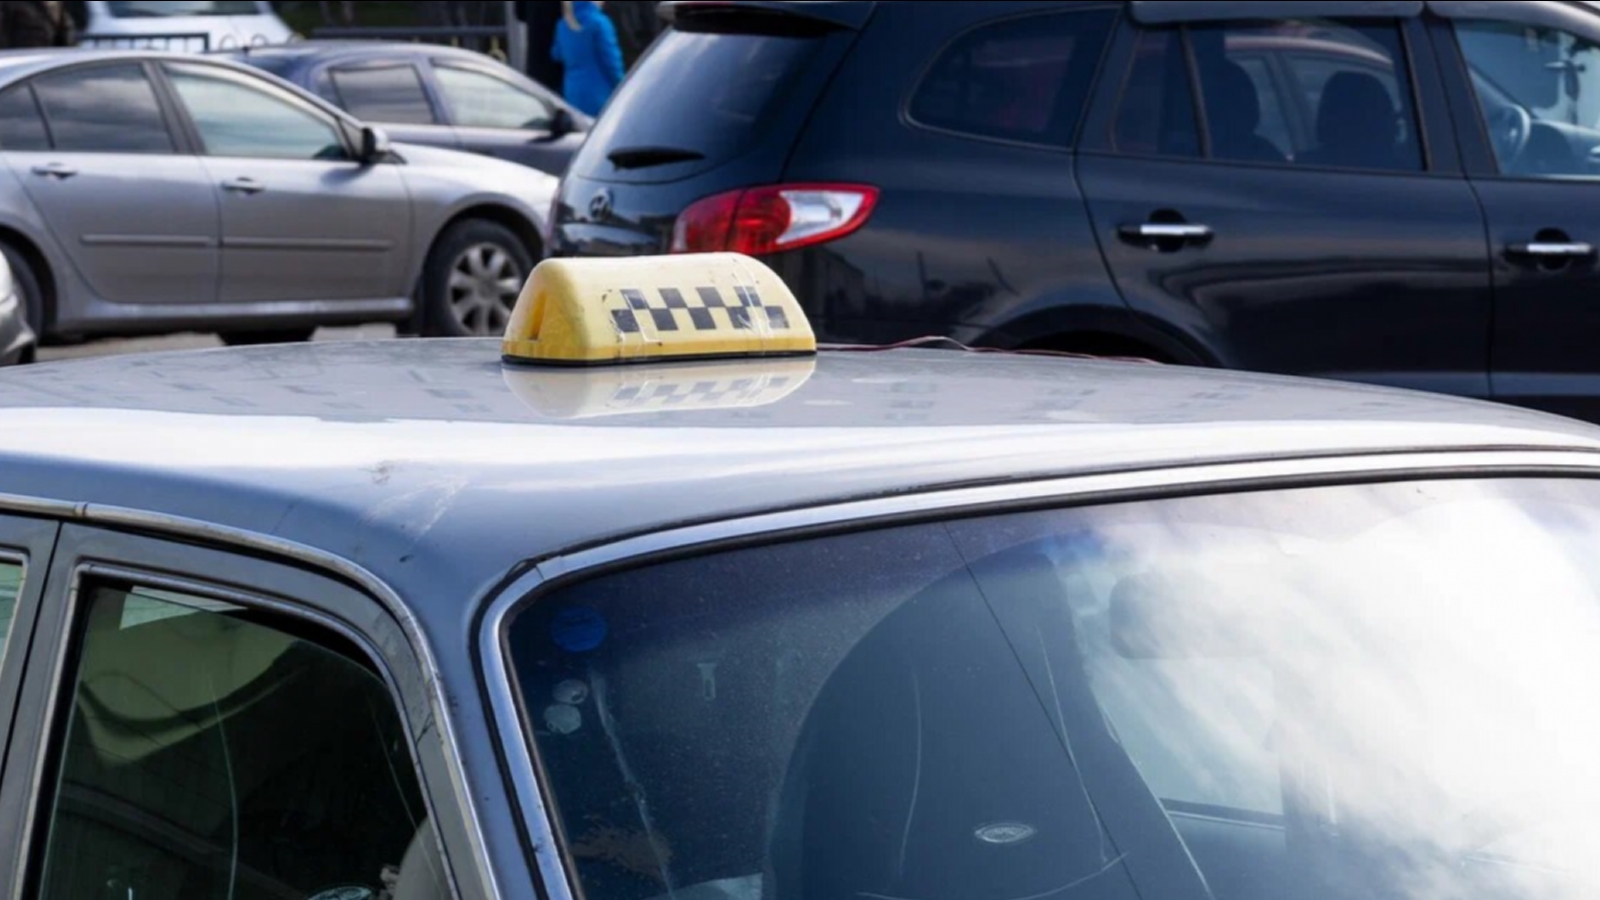 Цены на услуги такси в Заполярье подорожали на 70%